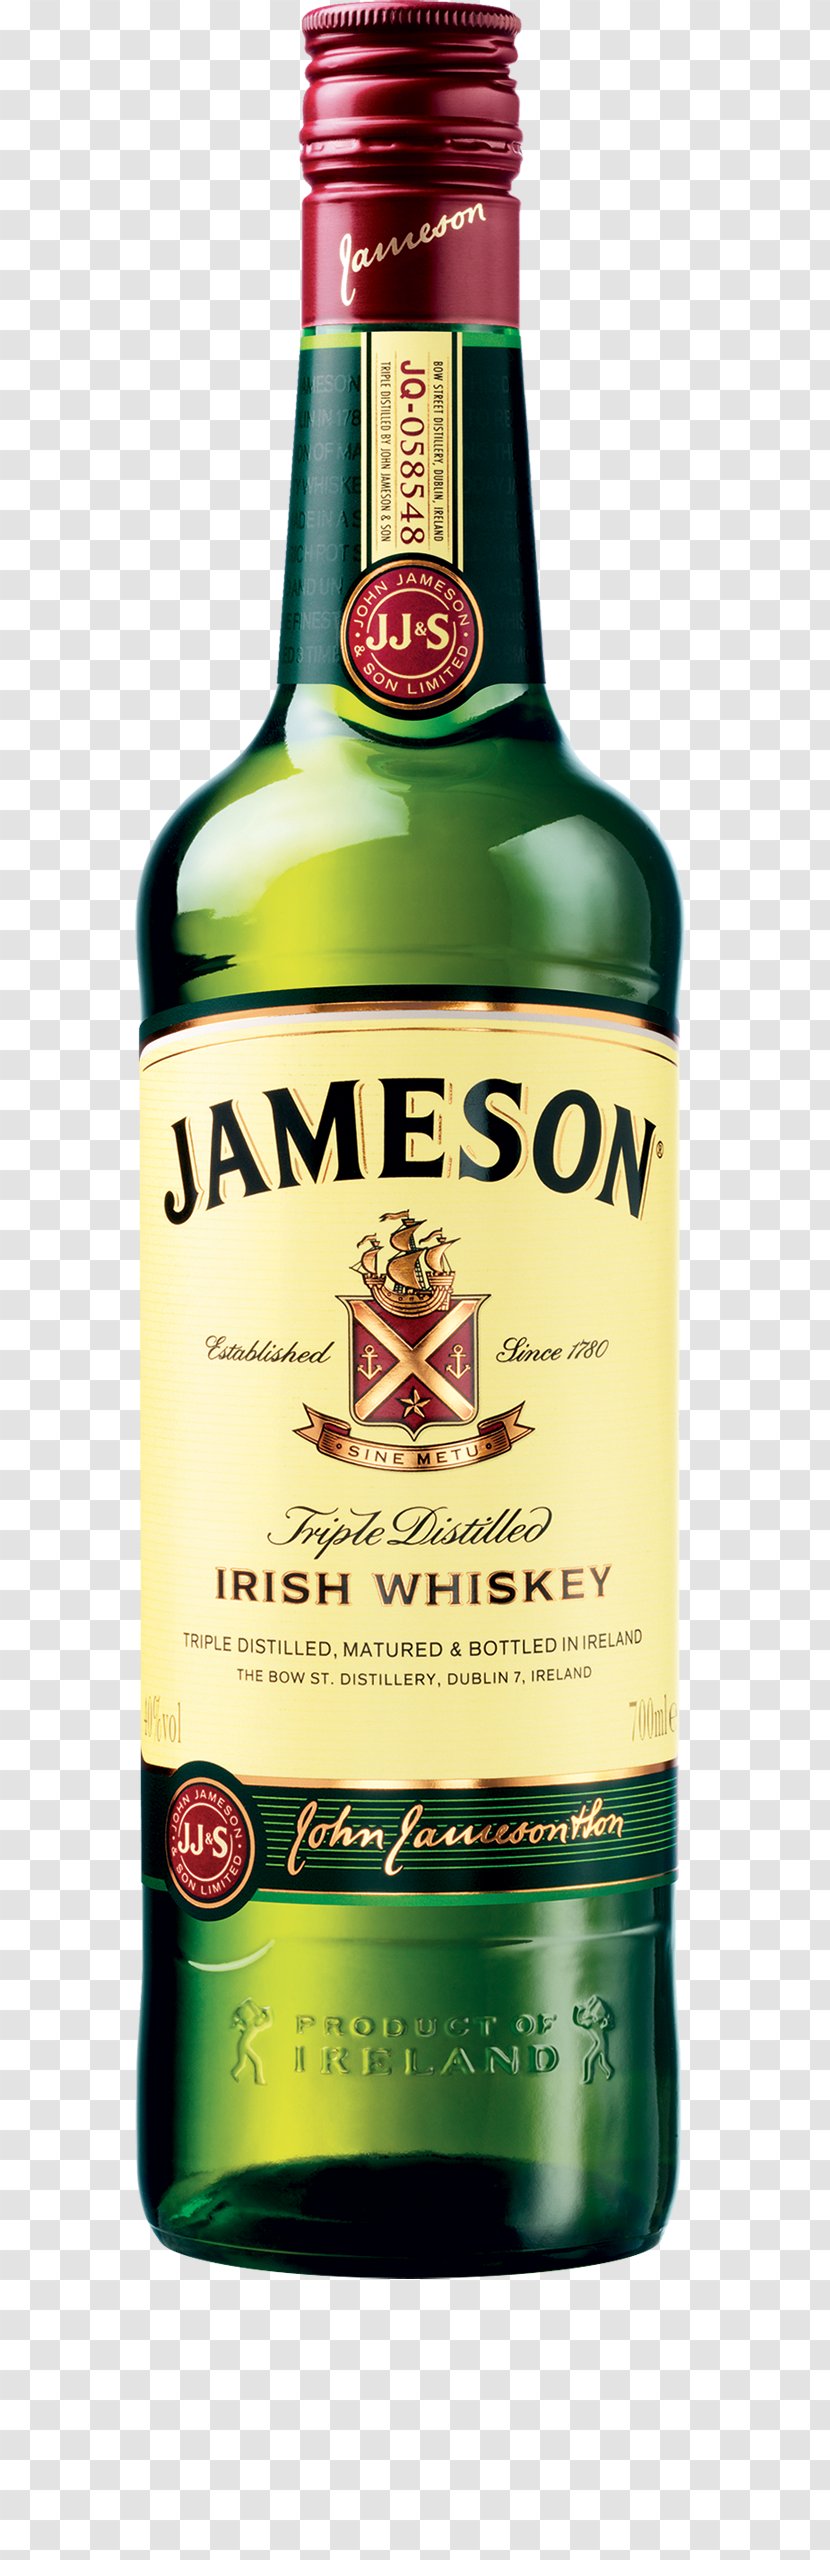 Jameson Irish Whiskey Distilled Beverage New Midleton Distillery - Distillation - The Aberdeen Whisky Shop Transparent PNG